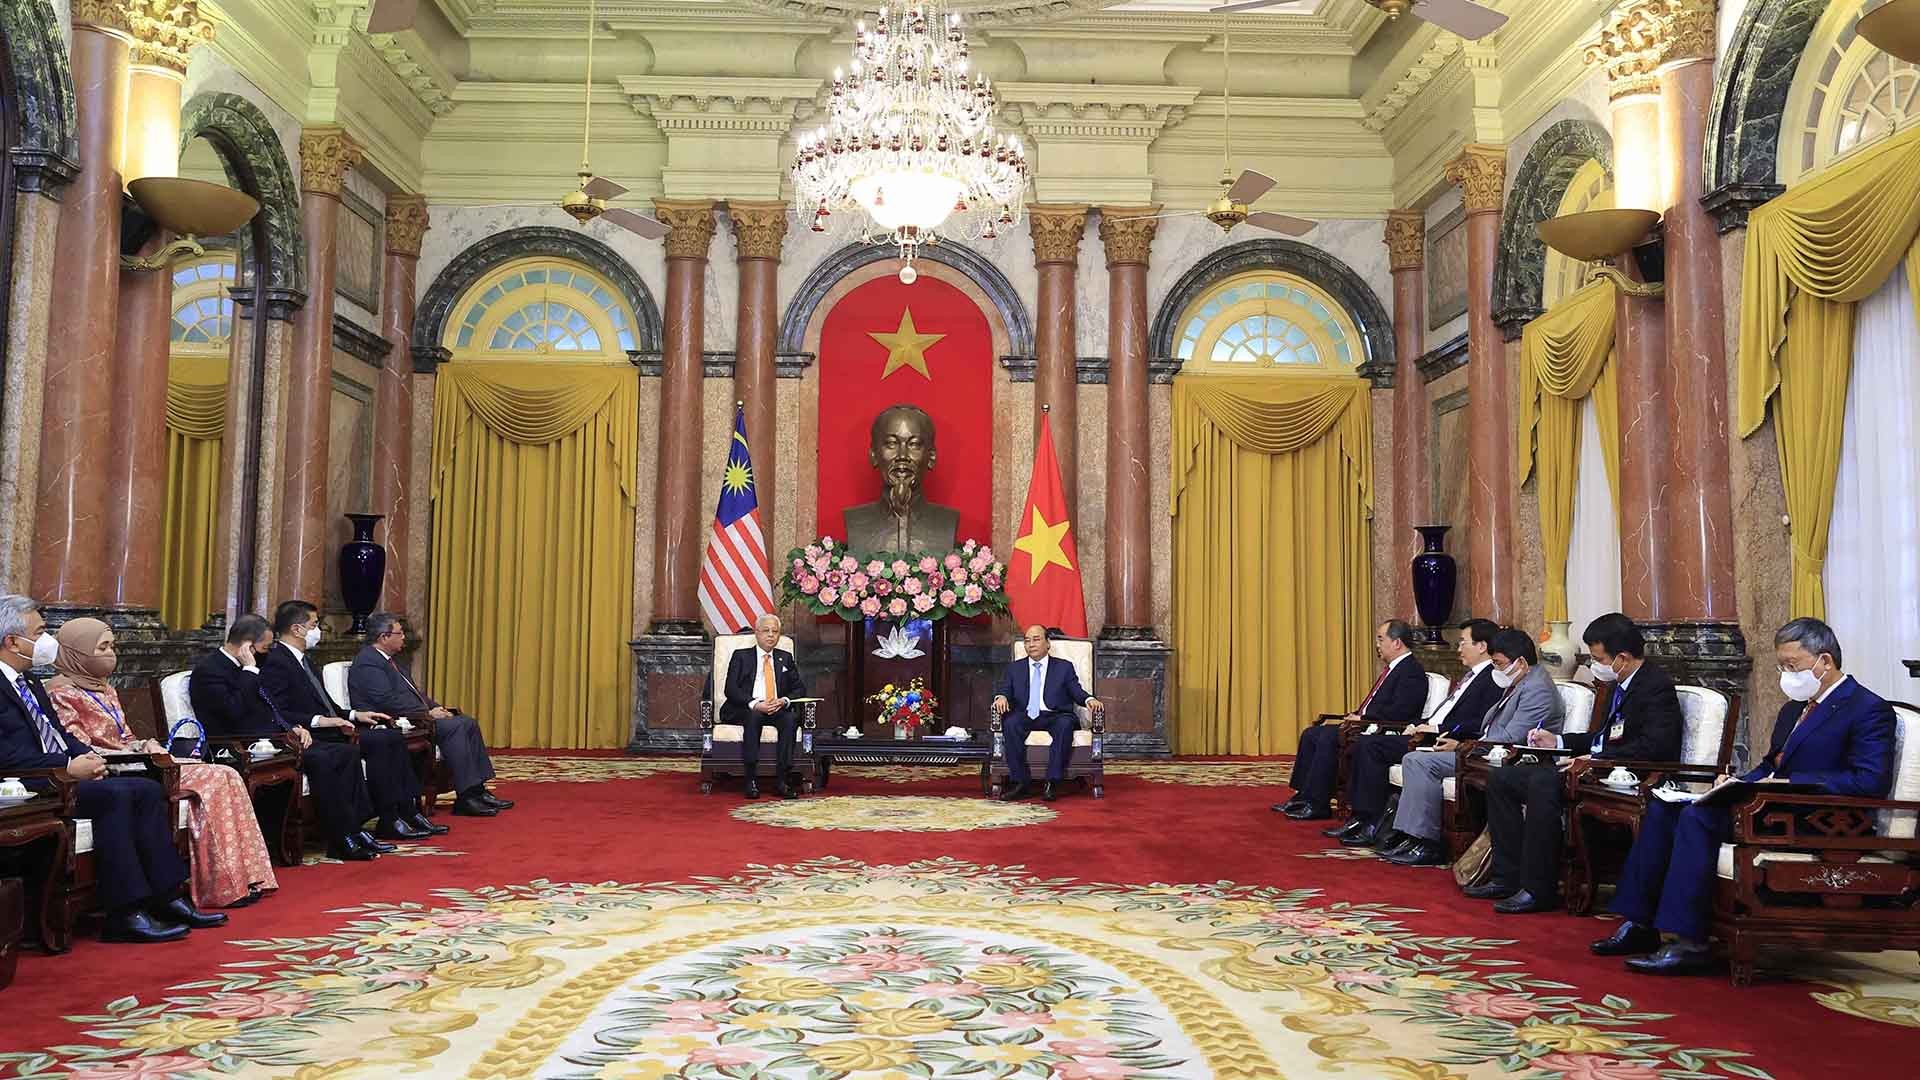 Chủ tịch nước Nguyễn Xuân Phúc tiếp Thủ tướng Malaysia